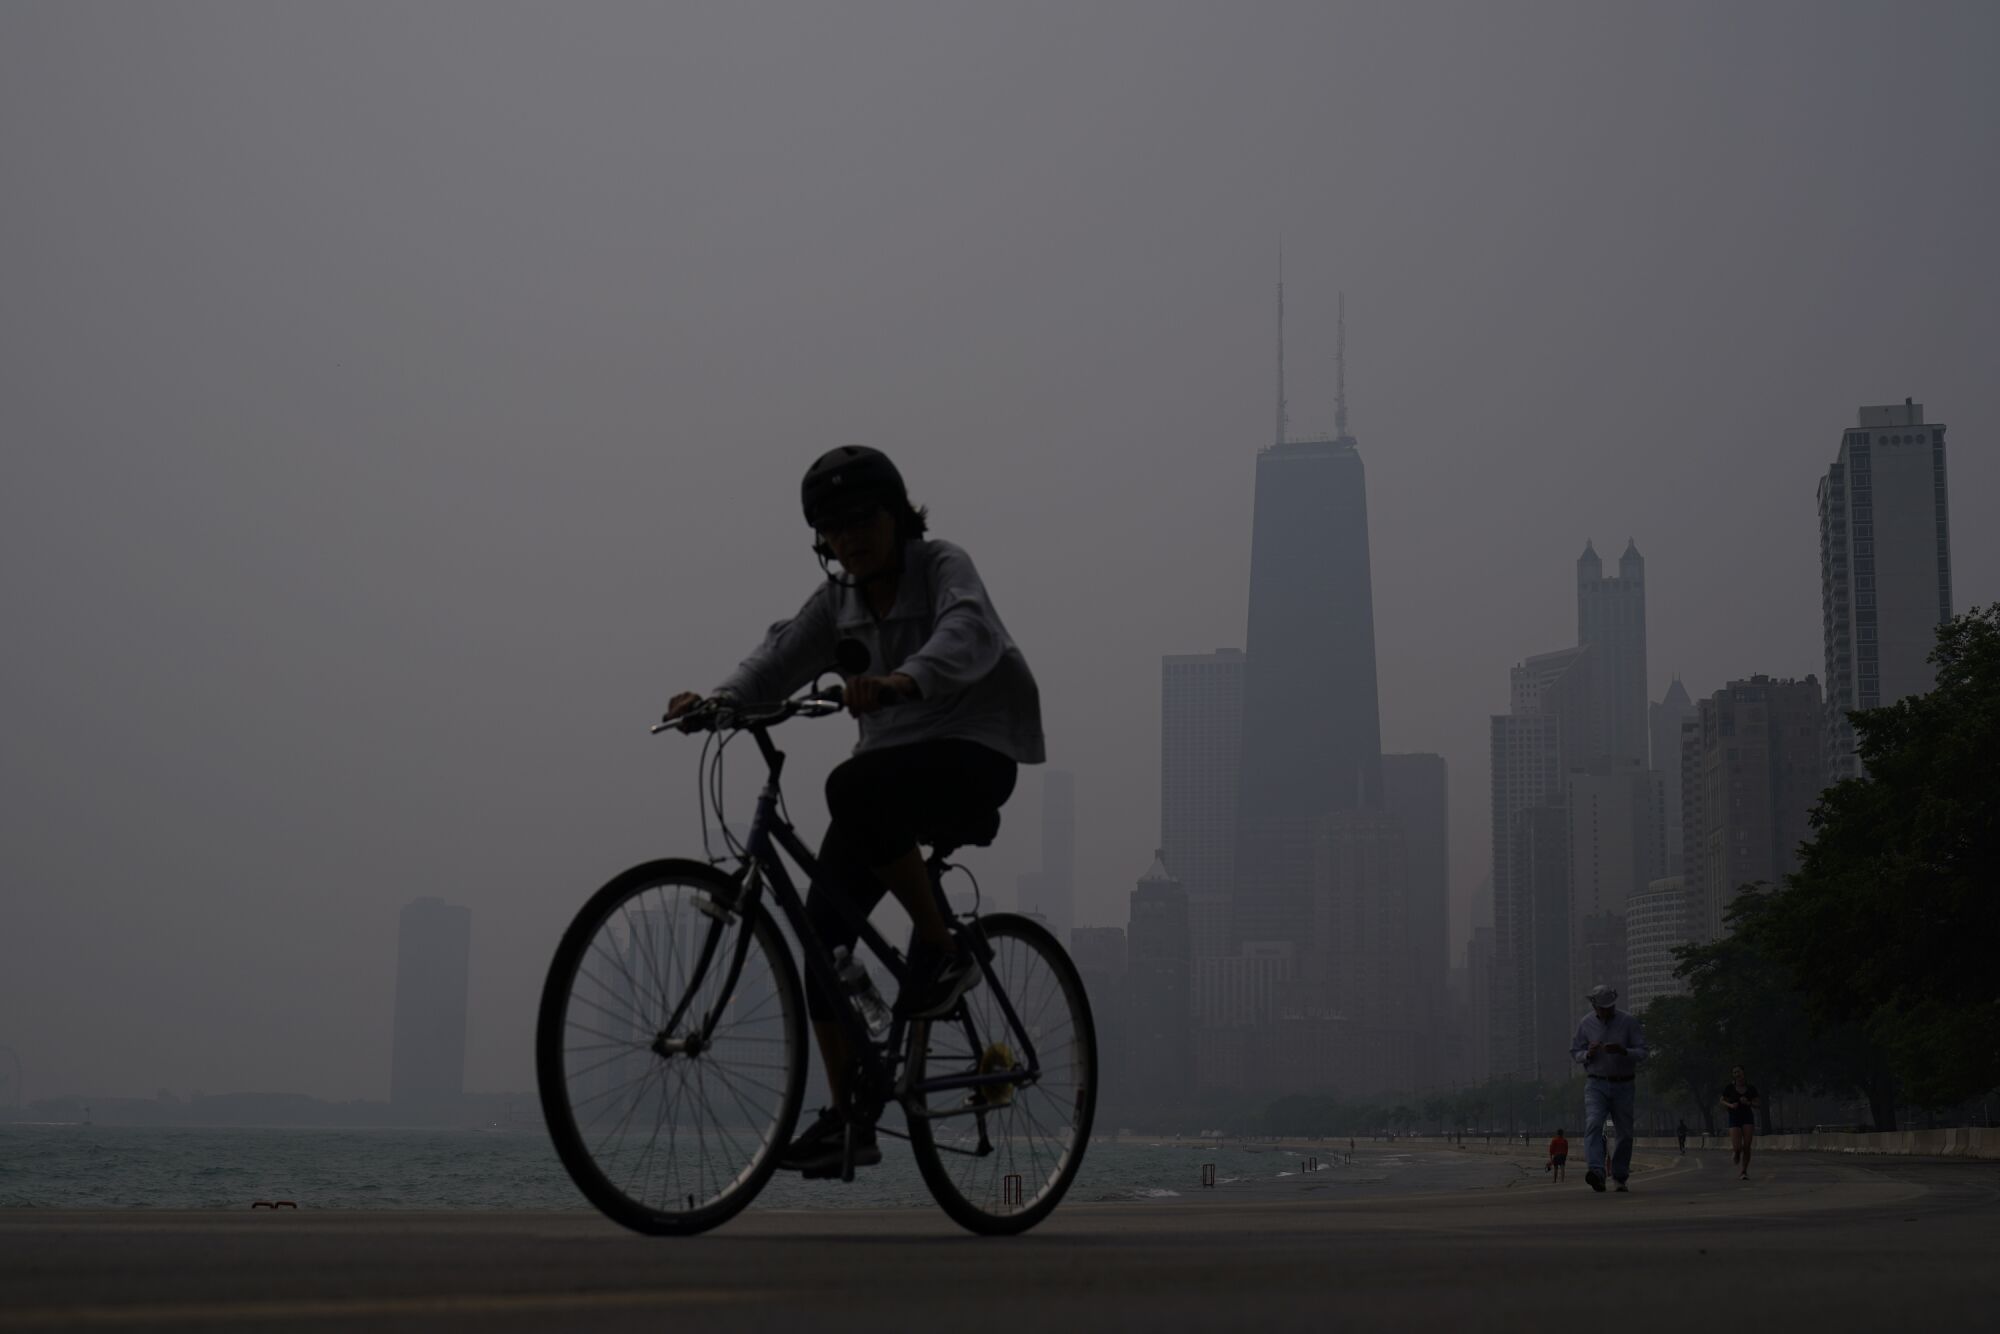 Un ciclista cabalgando en una neblina oscura contra el horizonte de una ciudad parcialmente oscurecida.